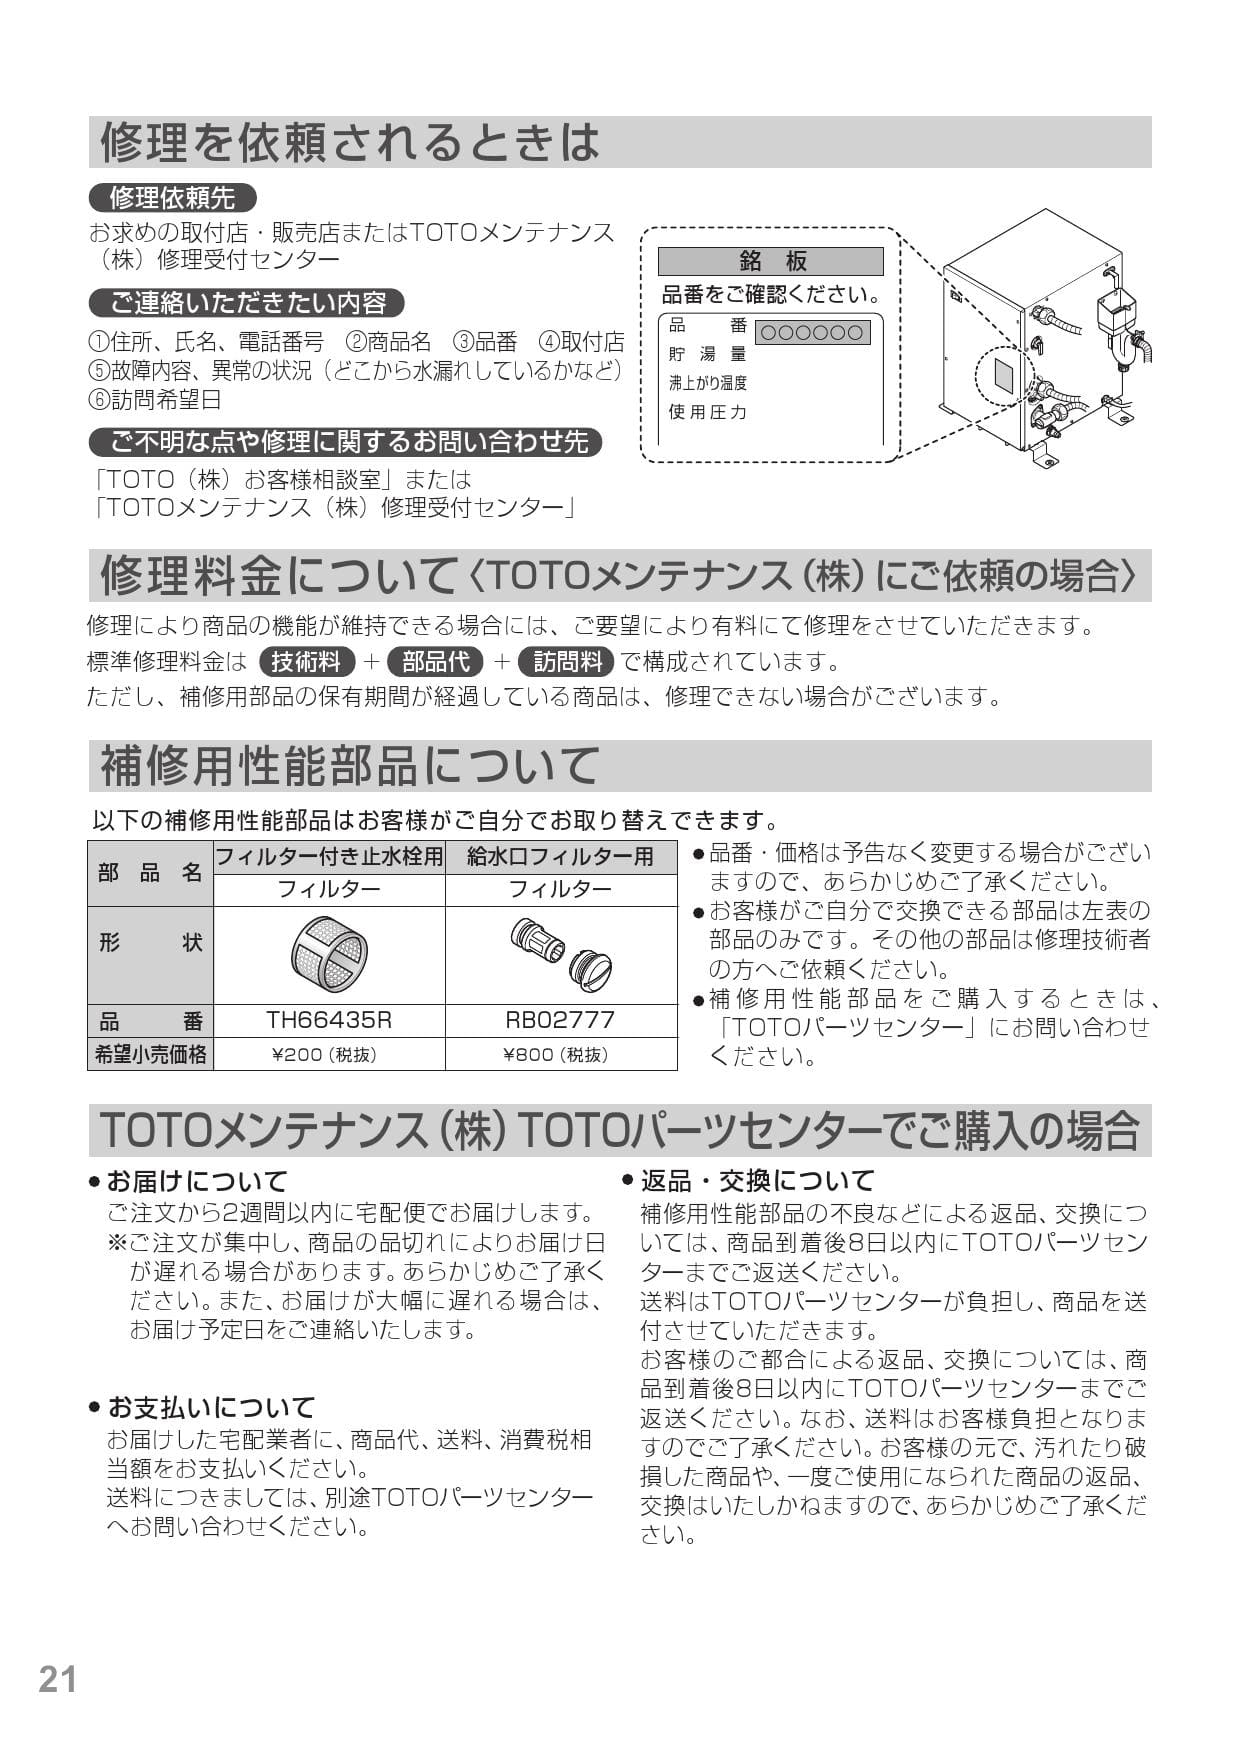 65%OFF【送料無料】 TH500DA TOTO 水栓部材 インデックス 宅配便